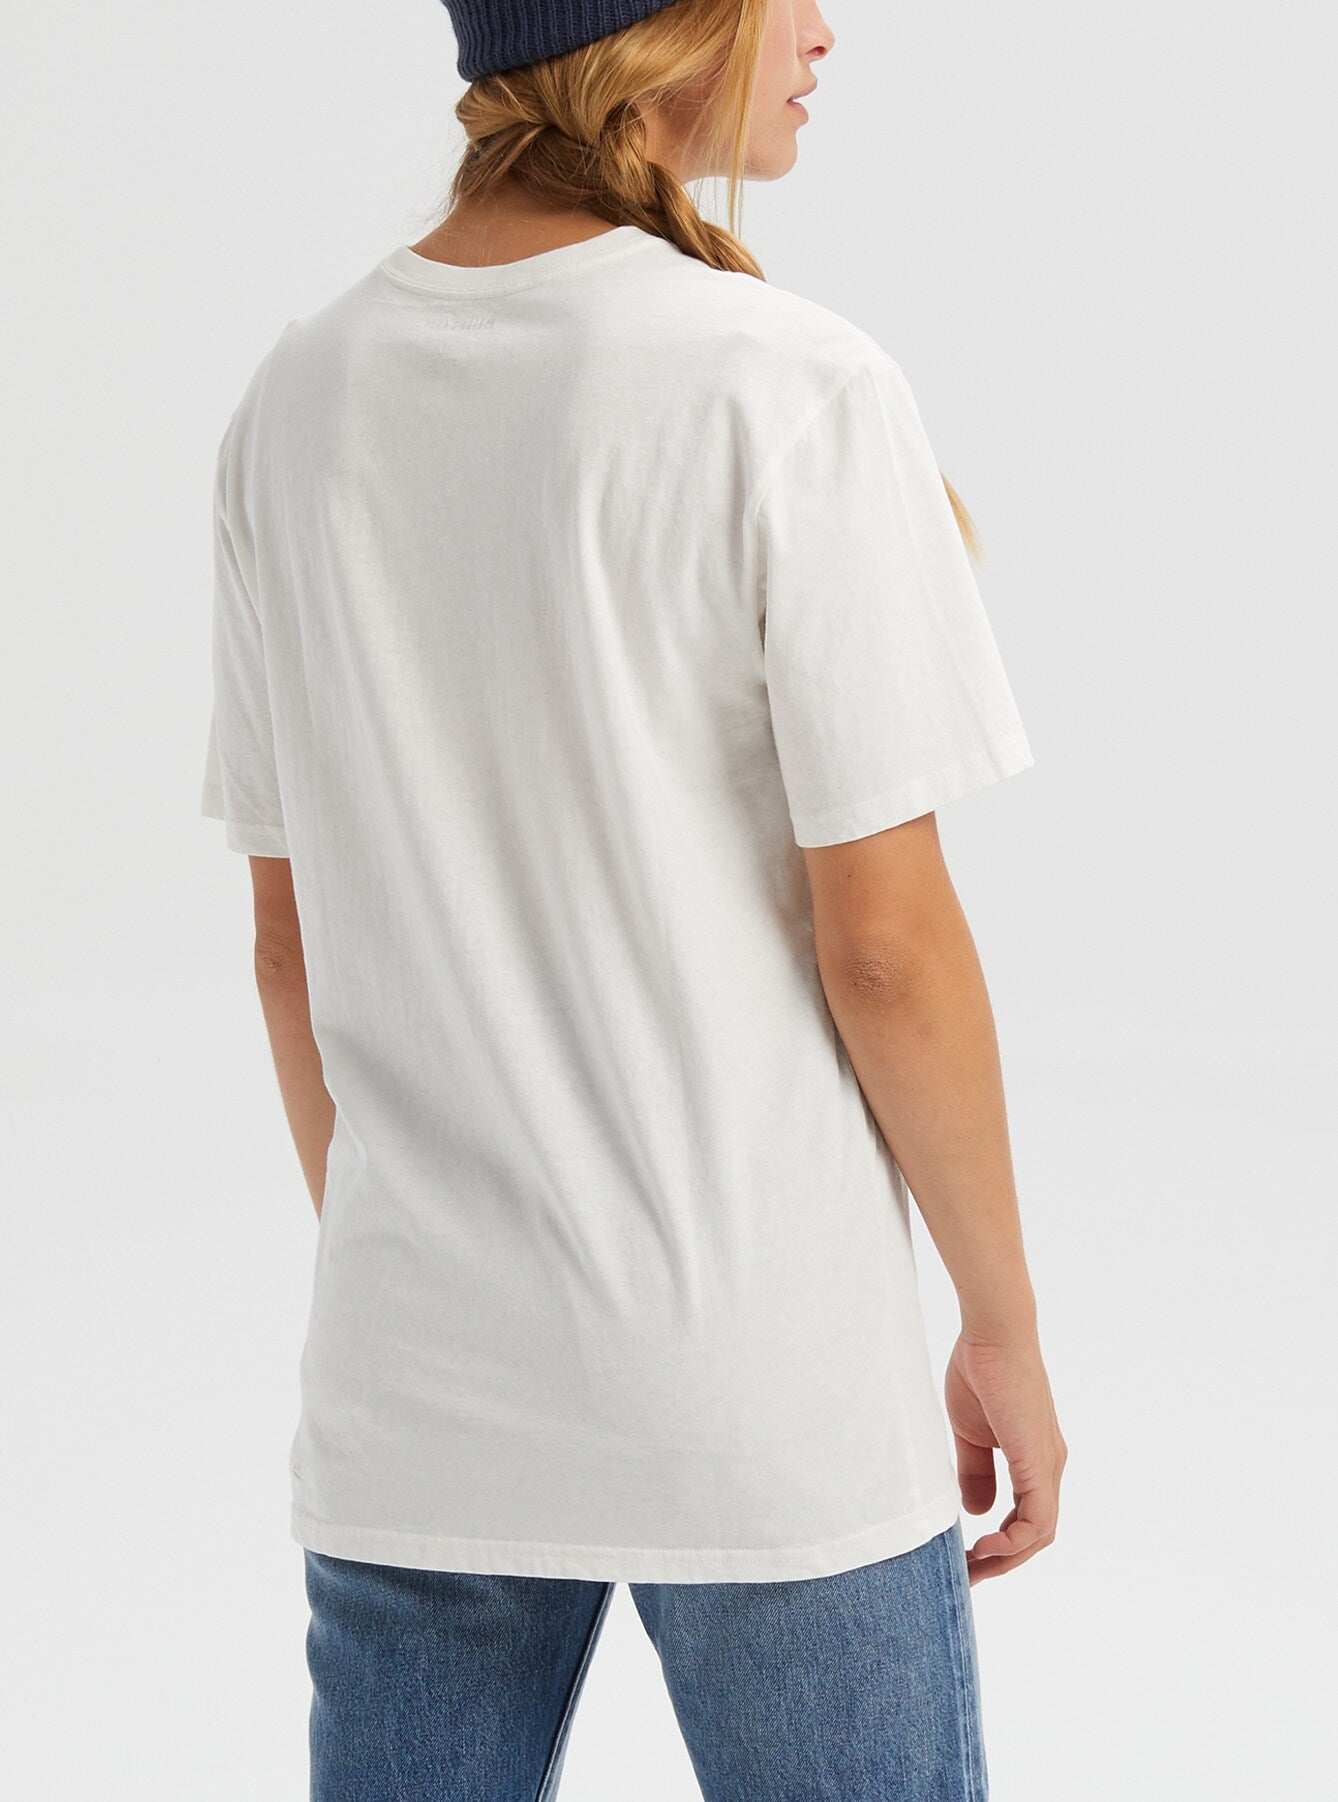 Męska koszulka Underhill T-Shirt